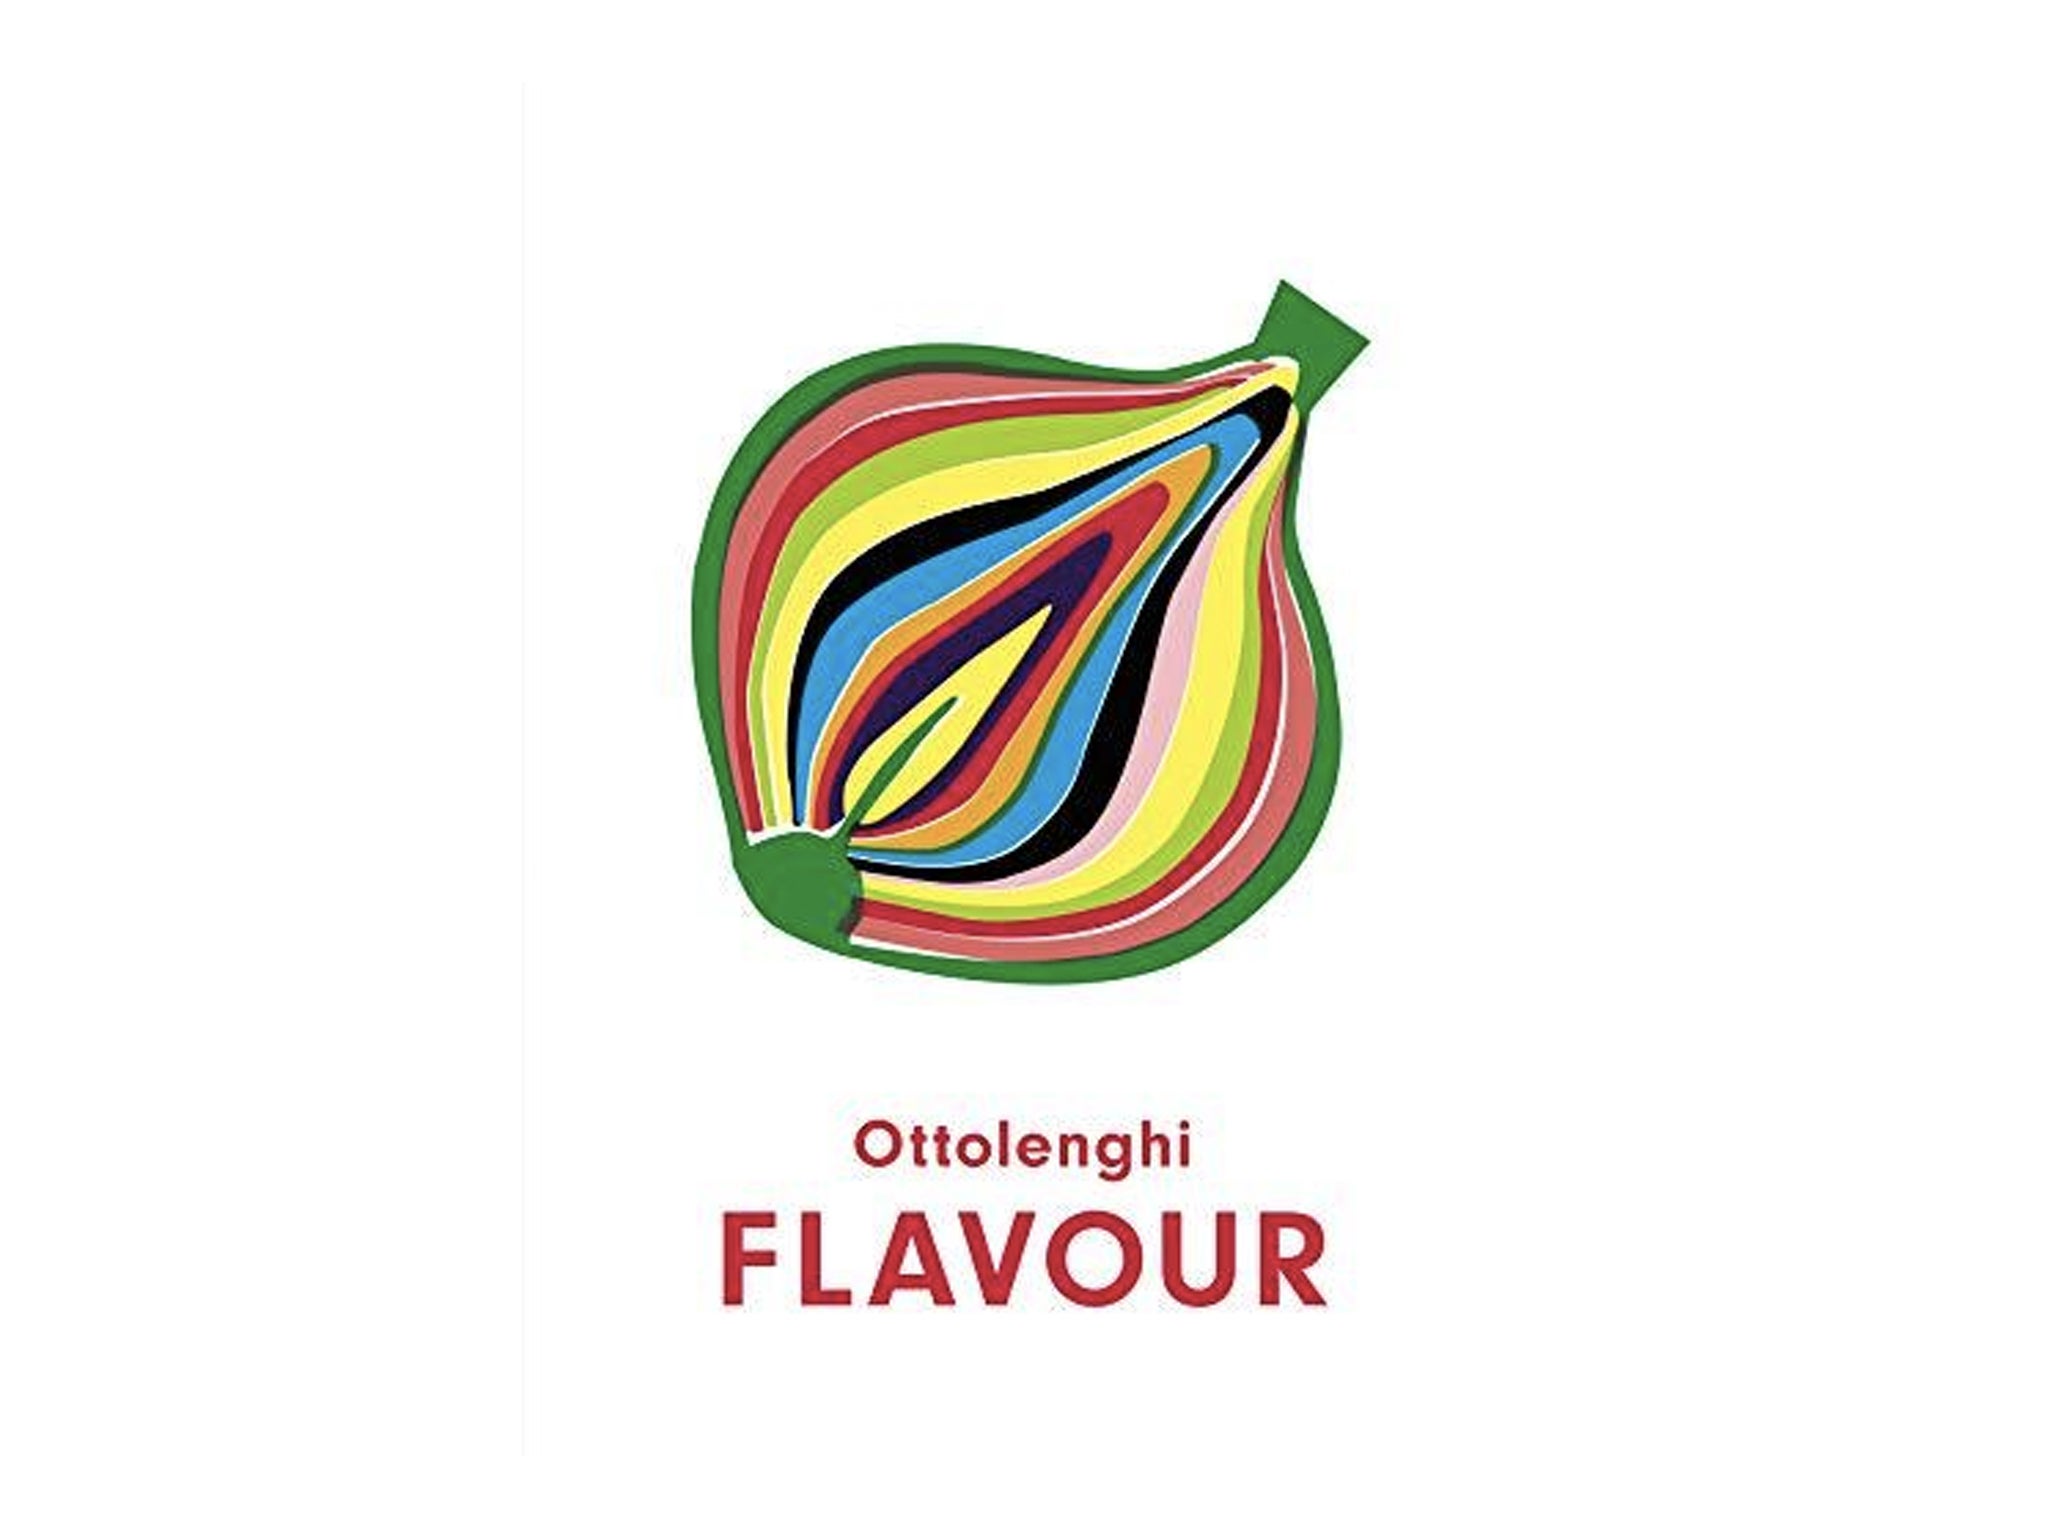 ‘Flavour’ by Yotam Ottolenghi